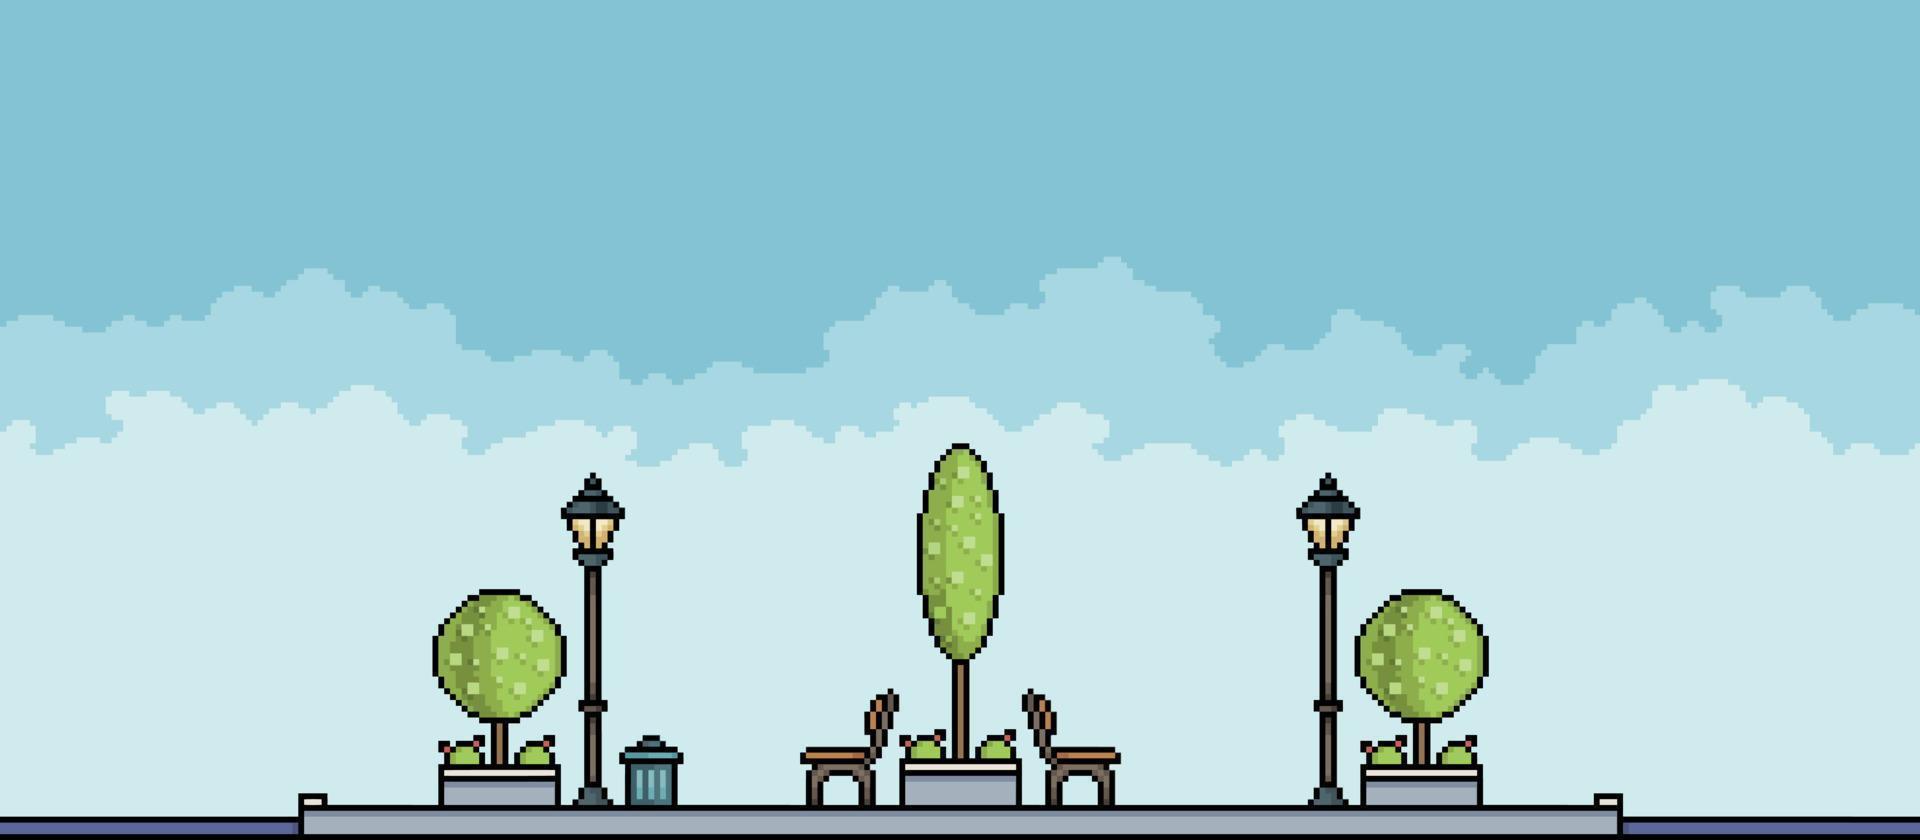 pixelpark med träd, rabatter, bänkar, krukor och soptunna stadslandskap. stadsbildsbakgrund för 8-bitars spel vektor